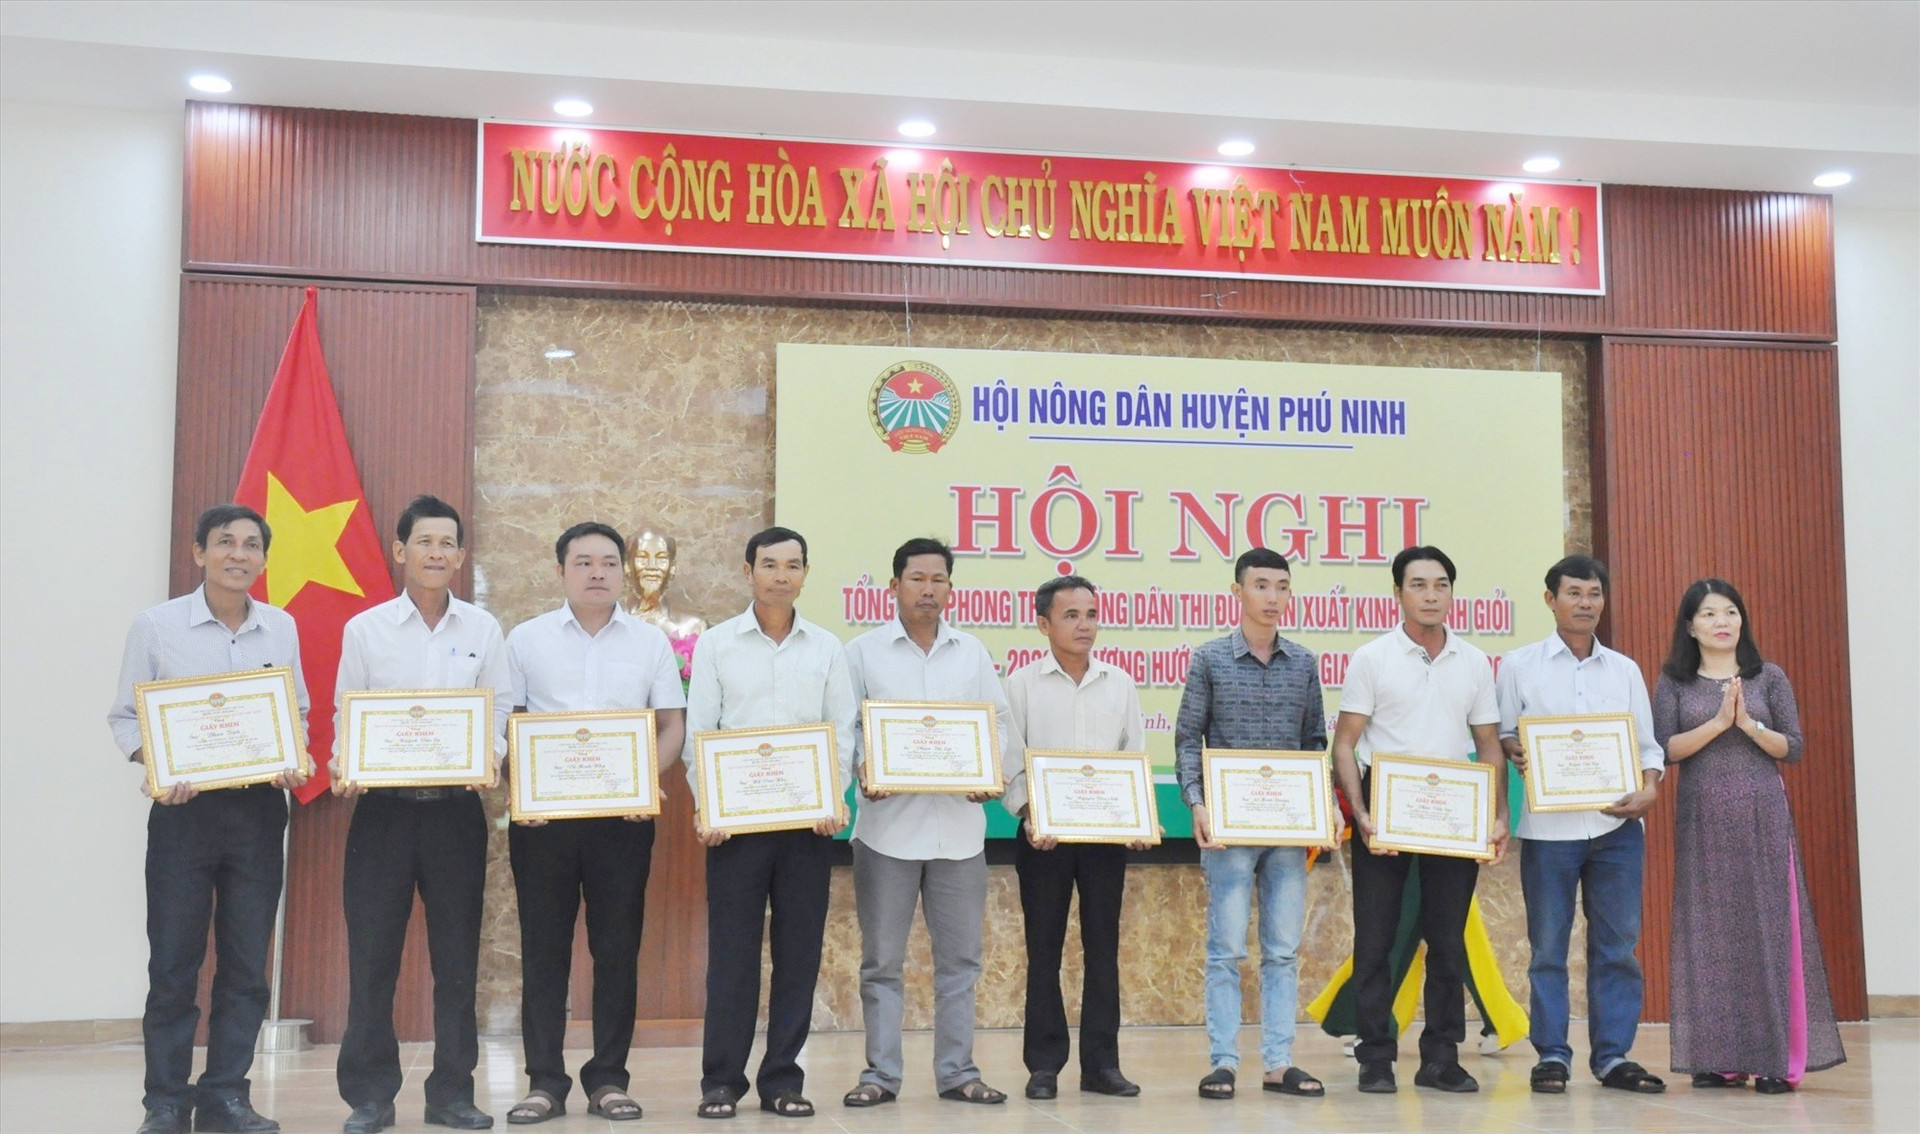 Lãnh đạo Hội Nông dân huyện Phú Ninh trao tặng giấy khen của Ban Thường vụ Hội Nông dân huyện cho các cá nhân có thành tích xuất sắc trong phong trào sản xuất - kinh doanh giỏi giai đoạn 2018 - 2023. Ảnh: N.Đ